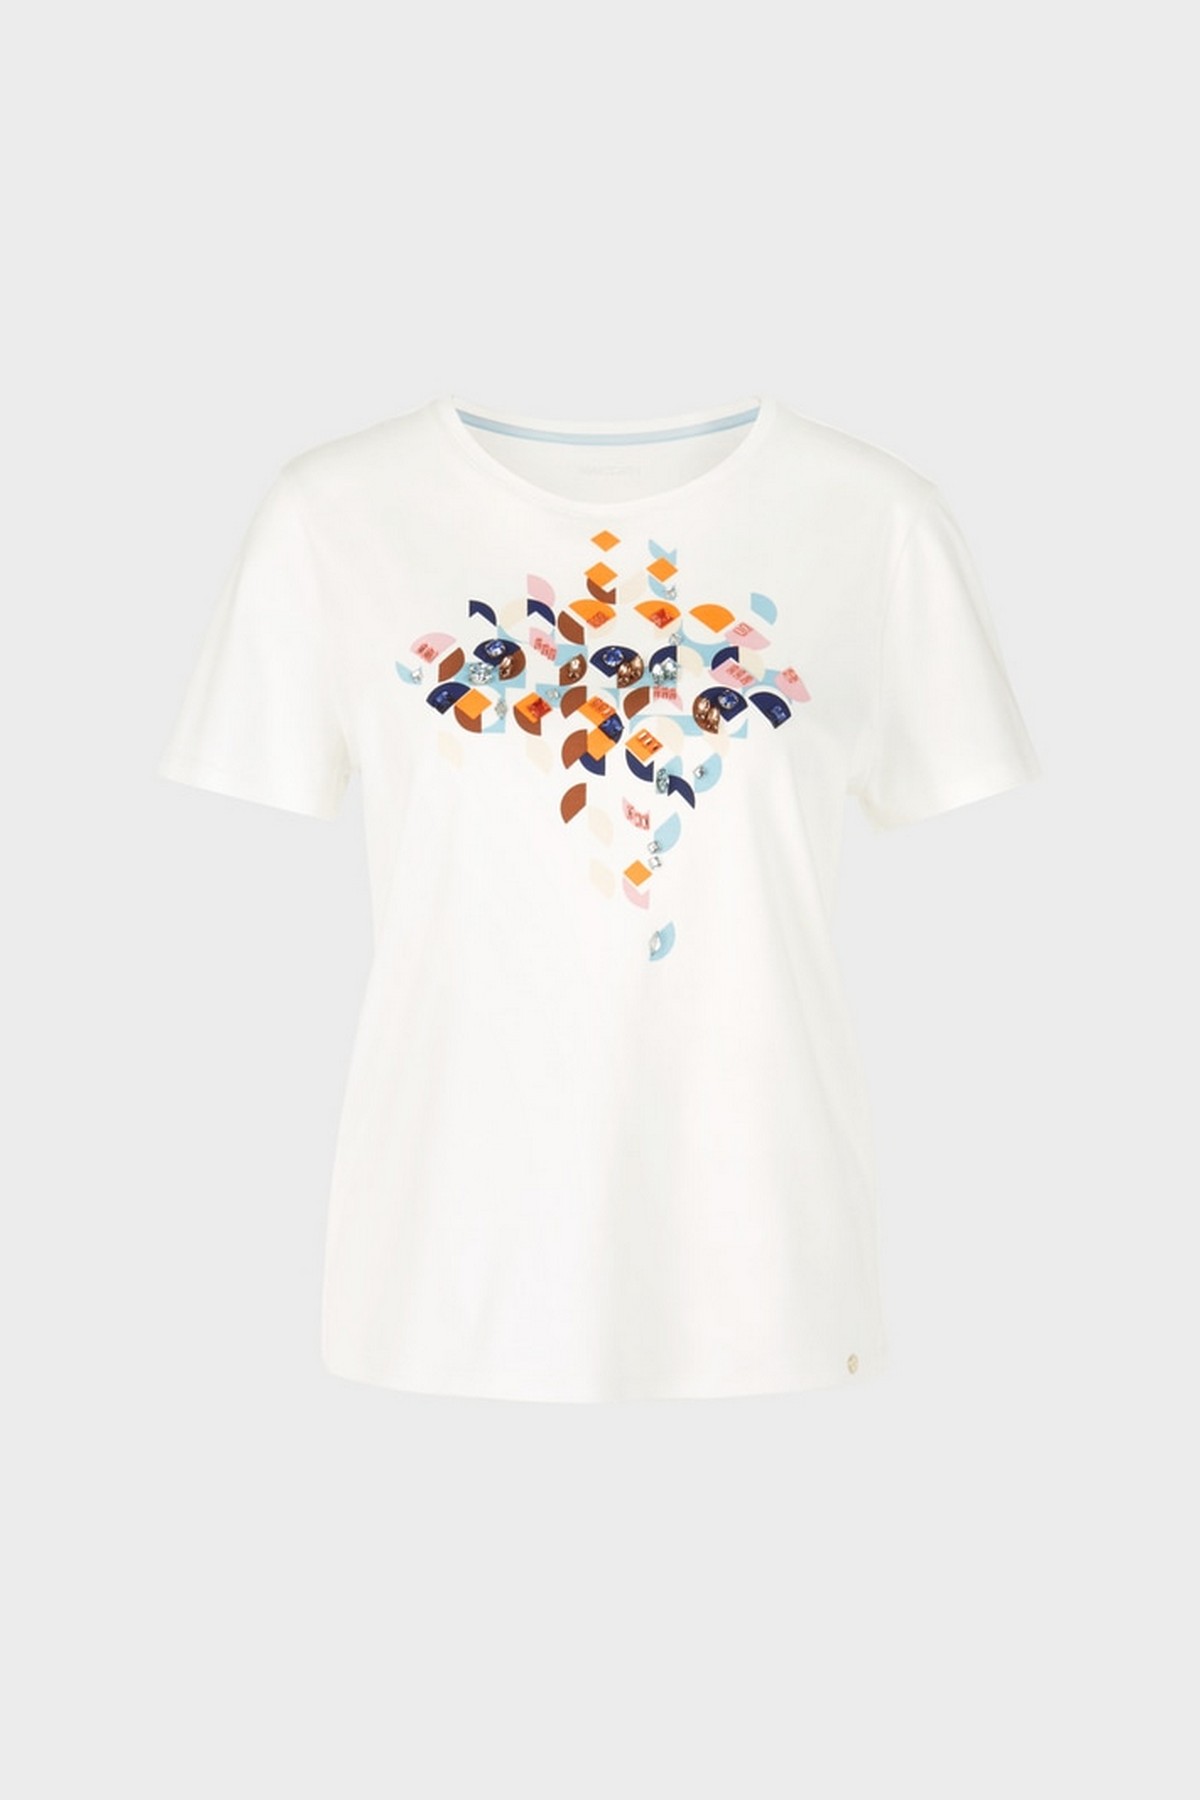 T-shirt grafisch motief beads in de kleur wit van het merk Marc Cain Collections